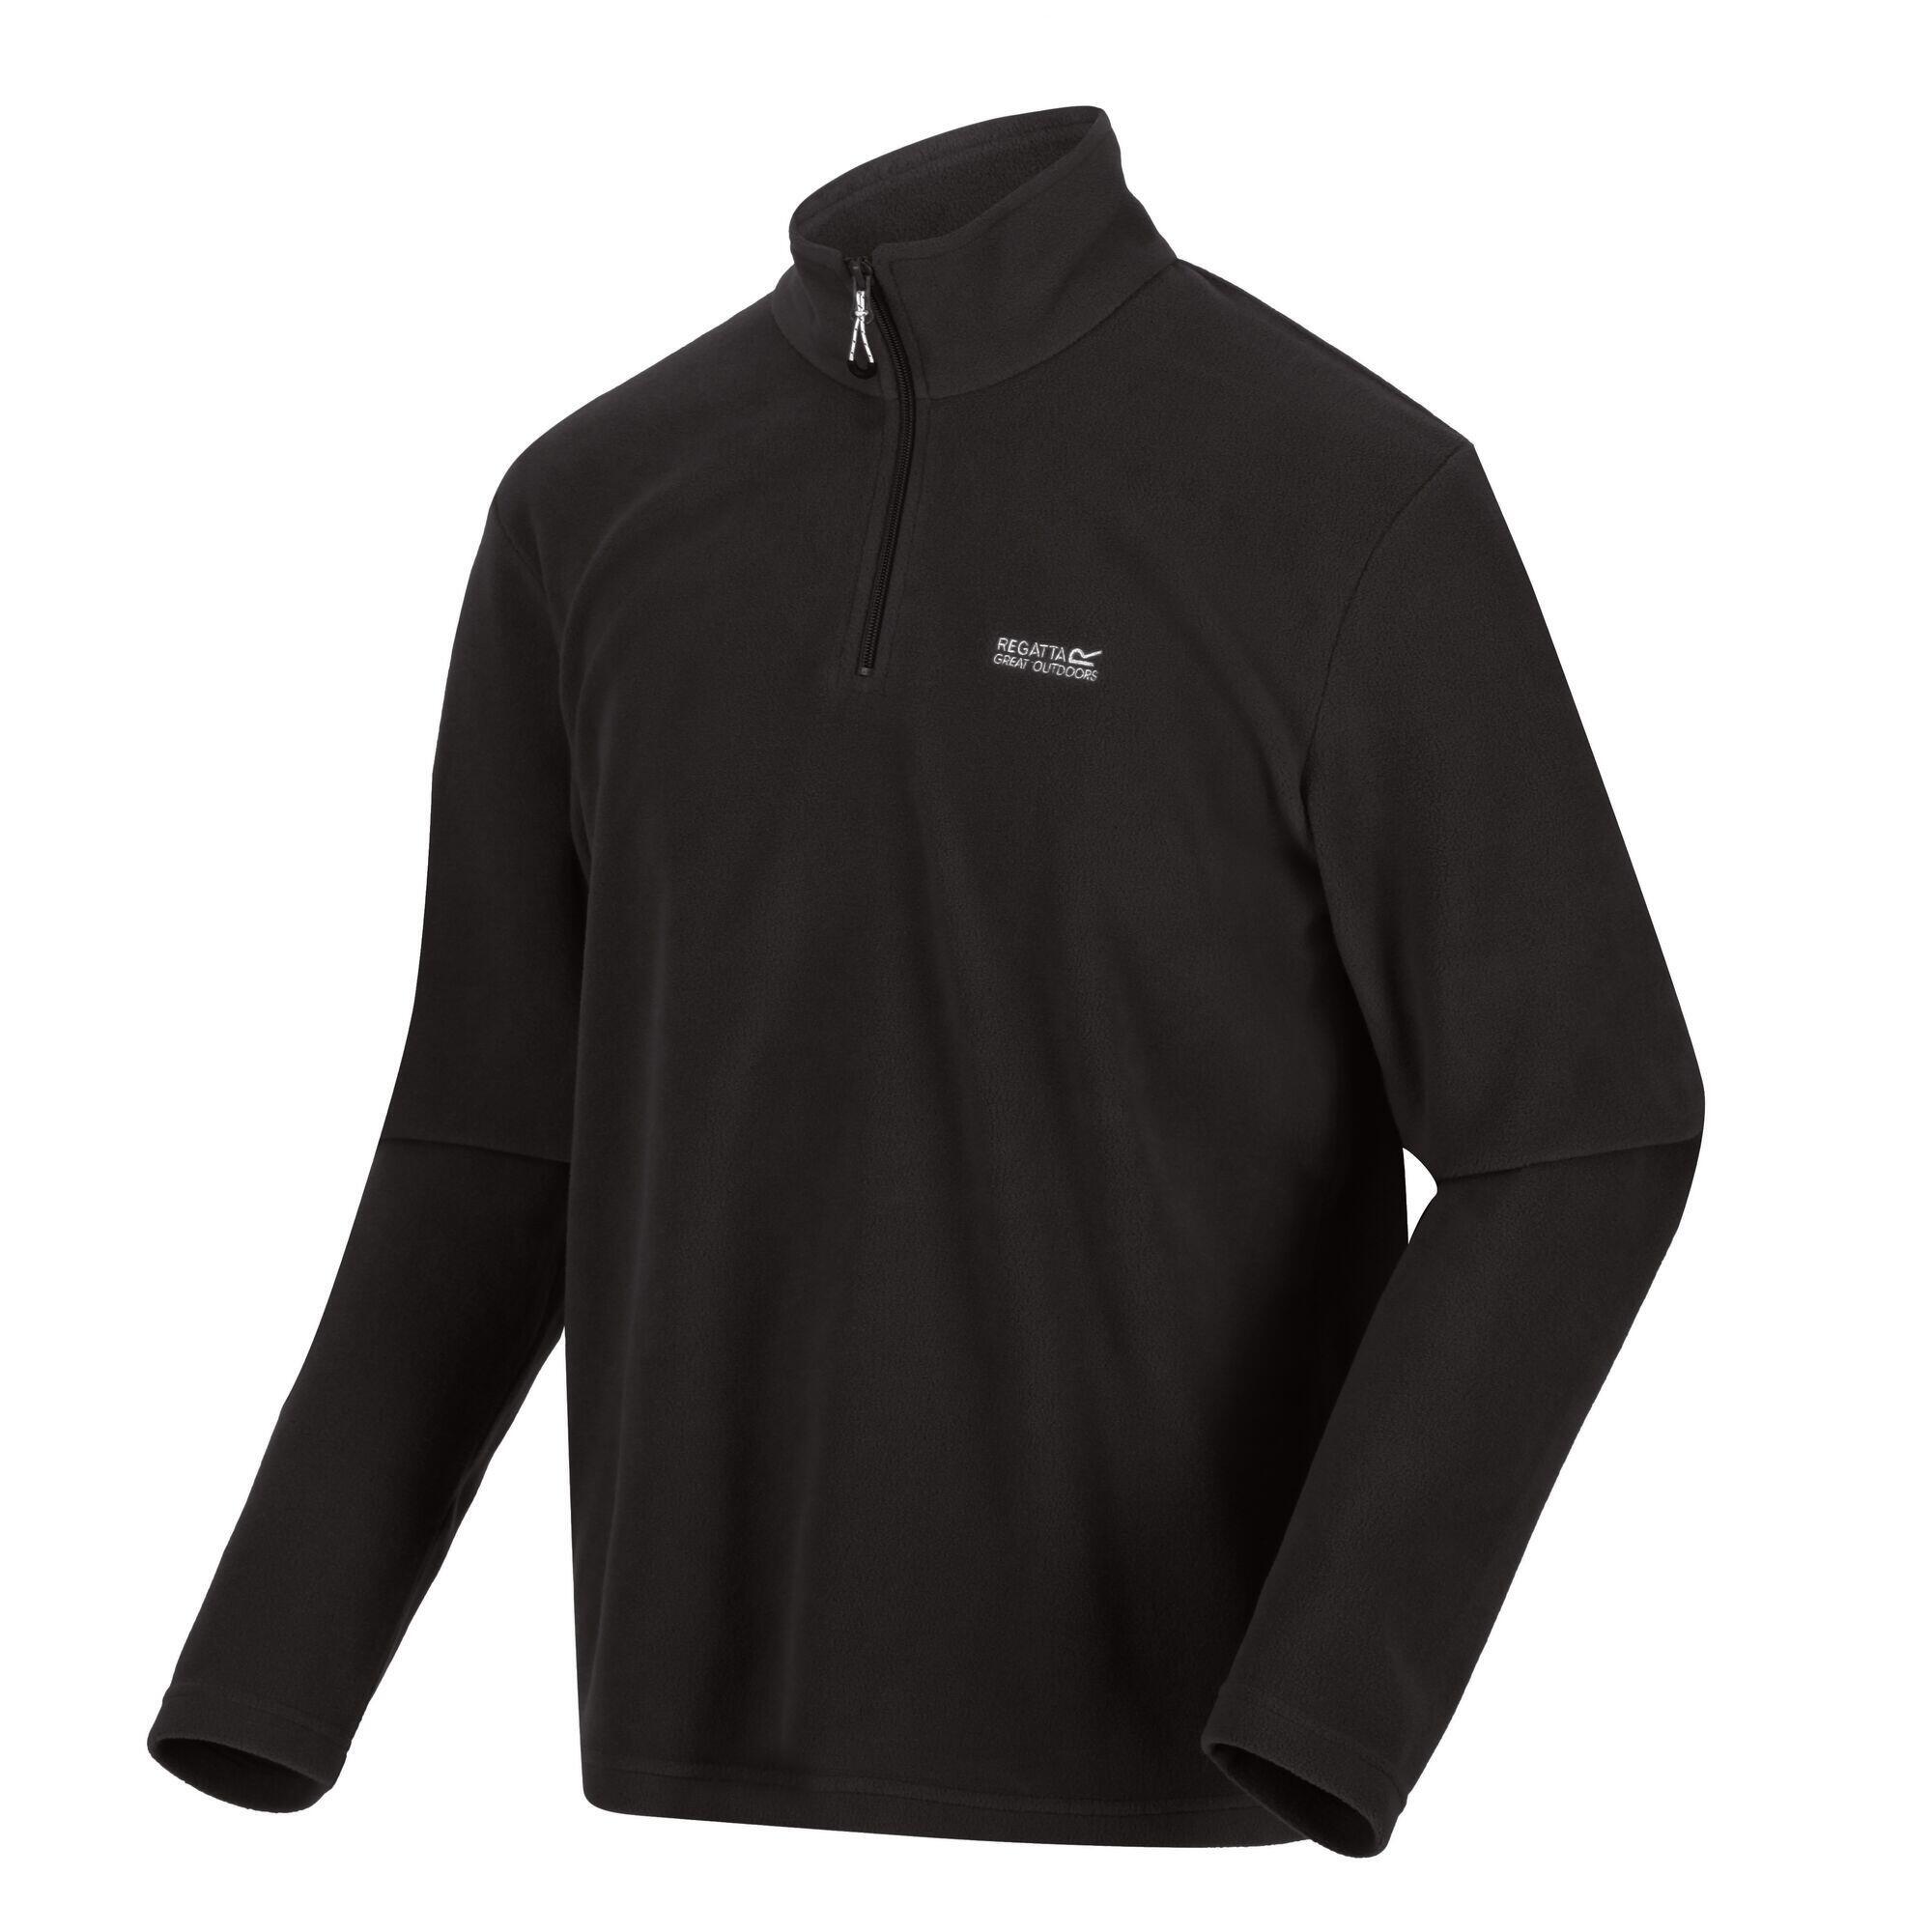 Куртка для походов флисовая мужская Regatta Thompson, черный куртка флисовая мужская lancaster черная размер s